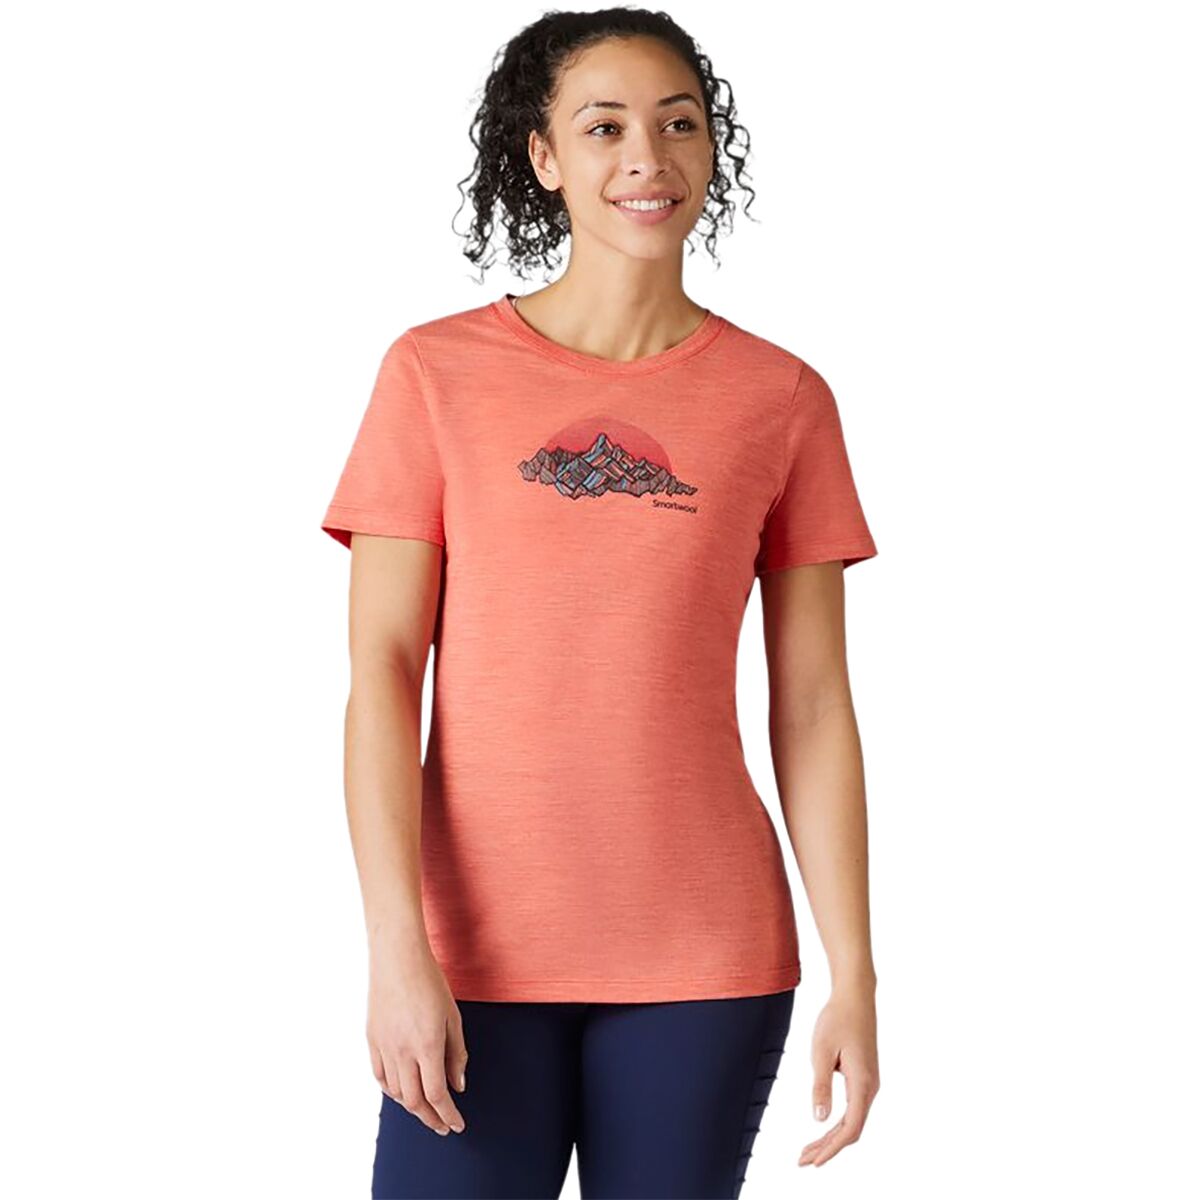 Smartwool Merino Sport 150 Mt. Rainier Graphic T-Shirt - Women's